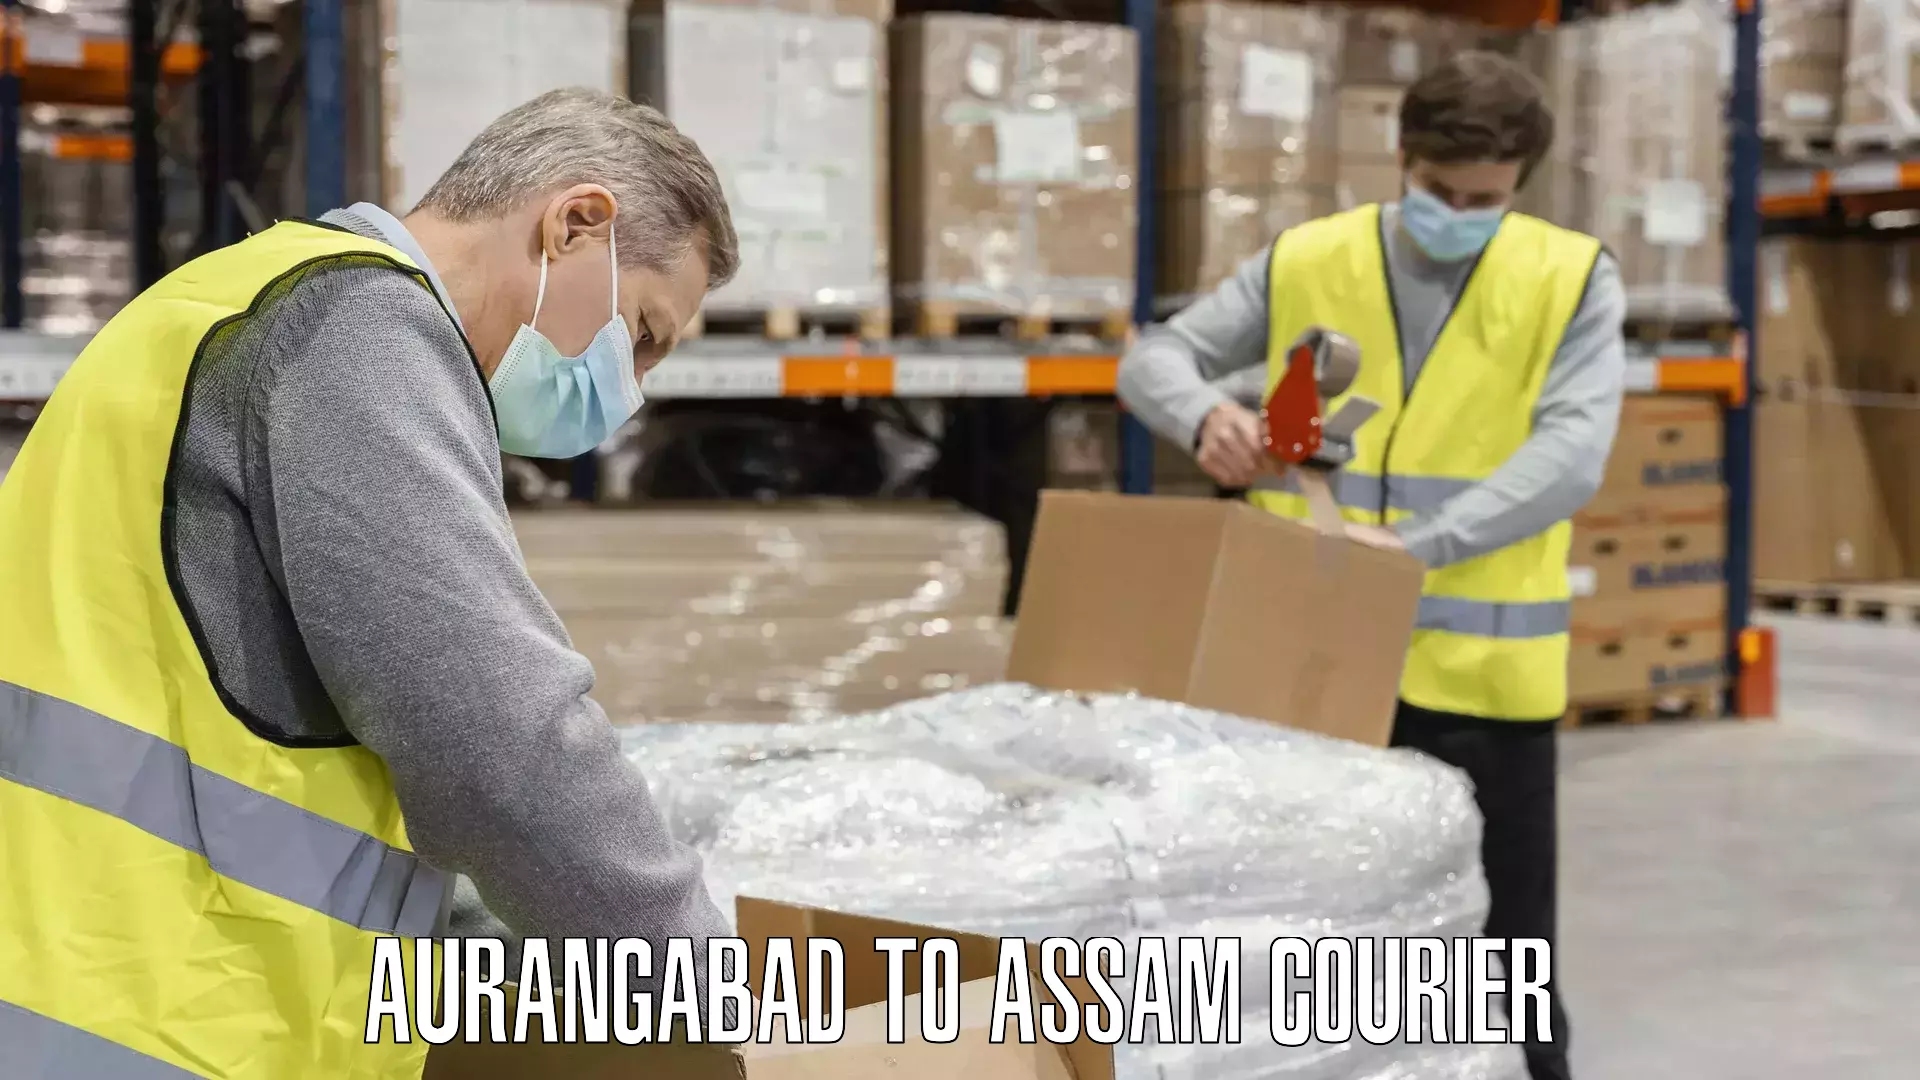 Luggage transport company Aurangabad to Assam